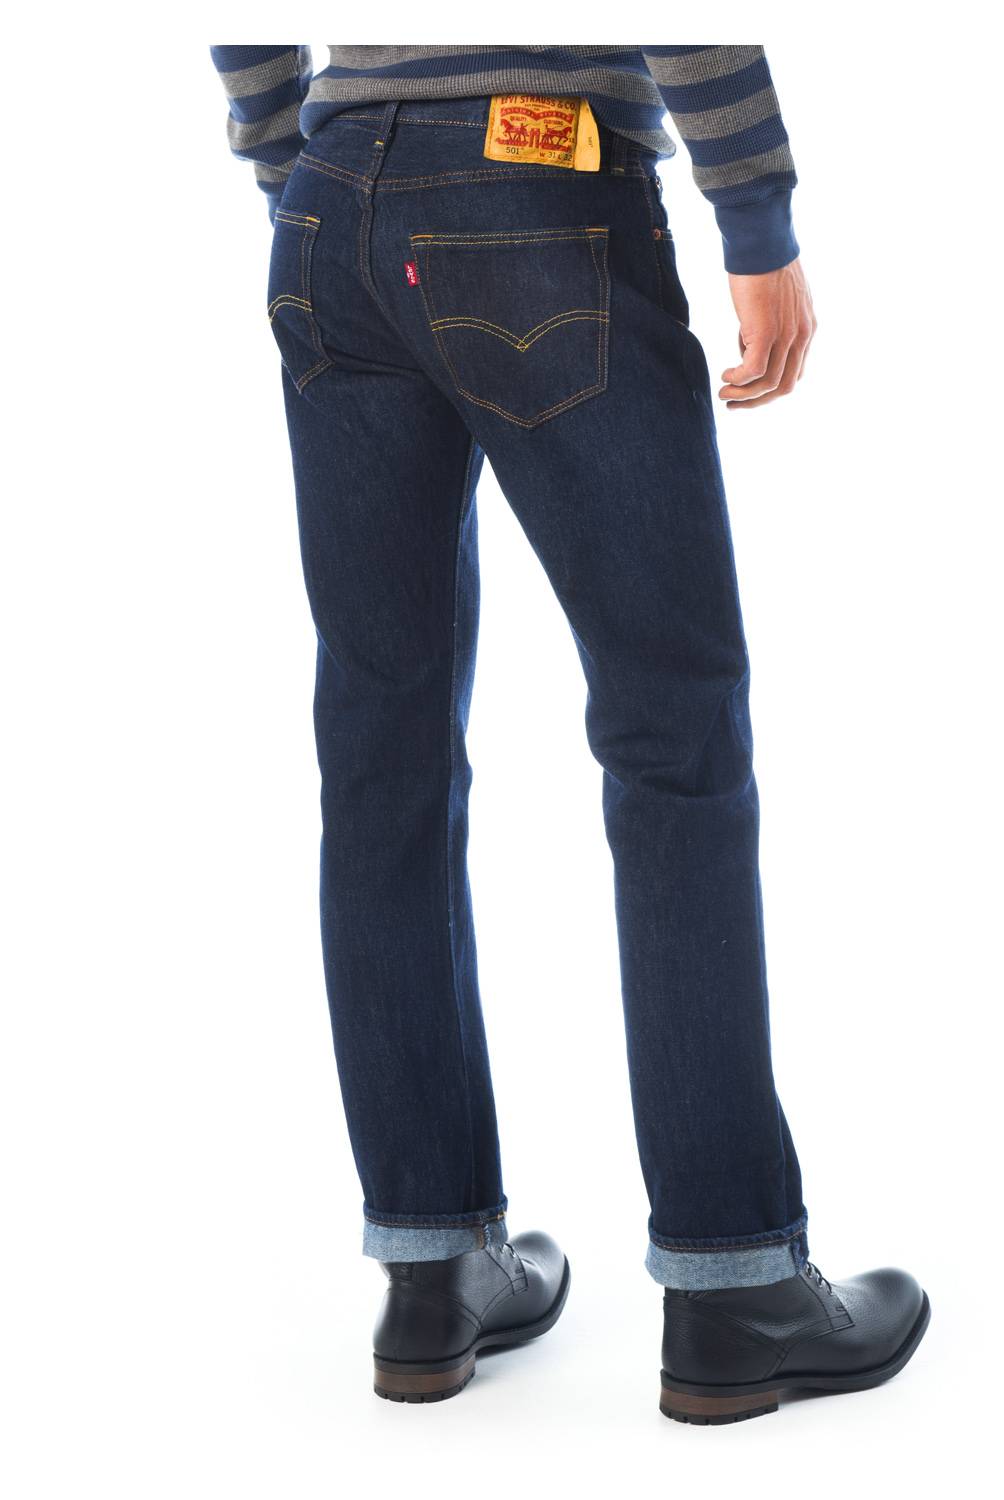 LEVIS - Jeans Original  00501-0115